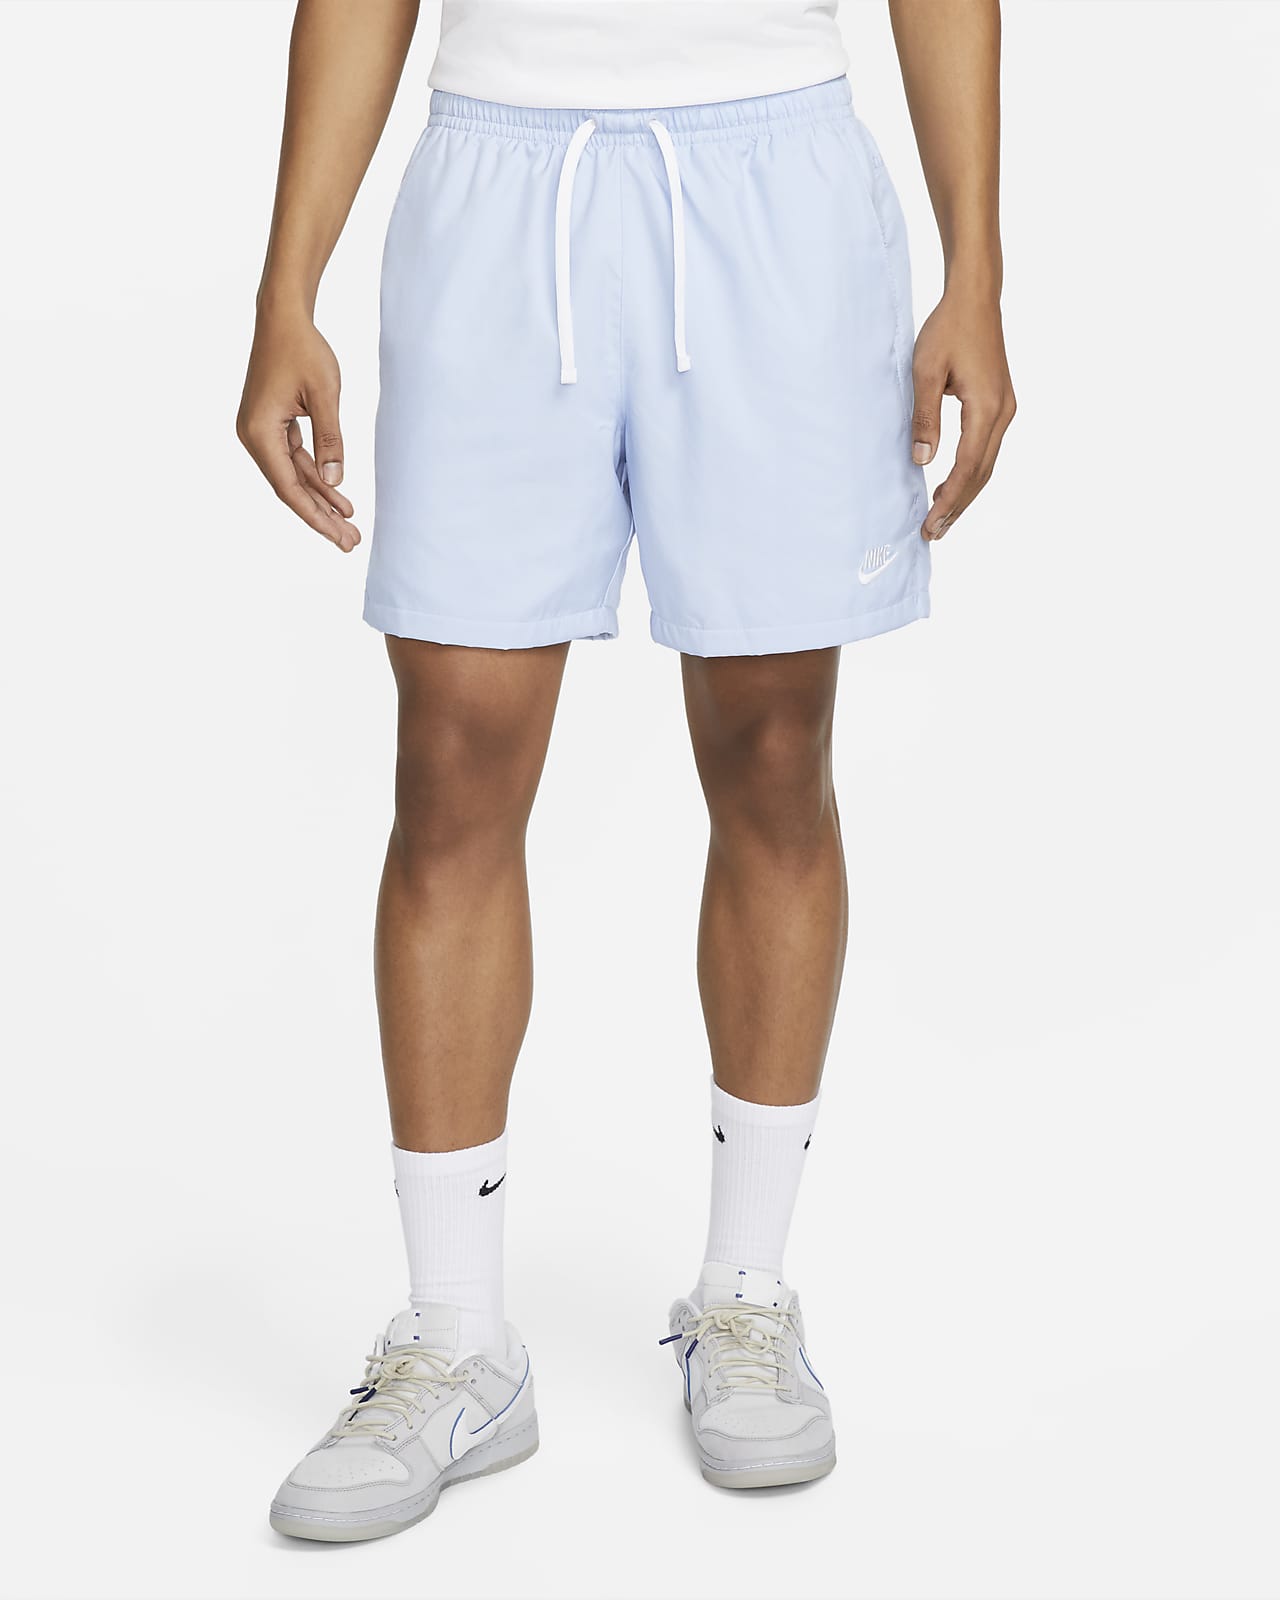 Ανδρικό υφαντό σορτς για ελευθερία κινήσεων Nike Sportswear